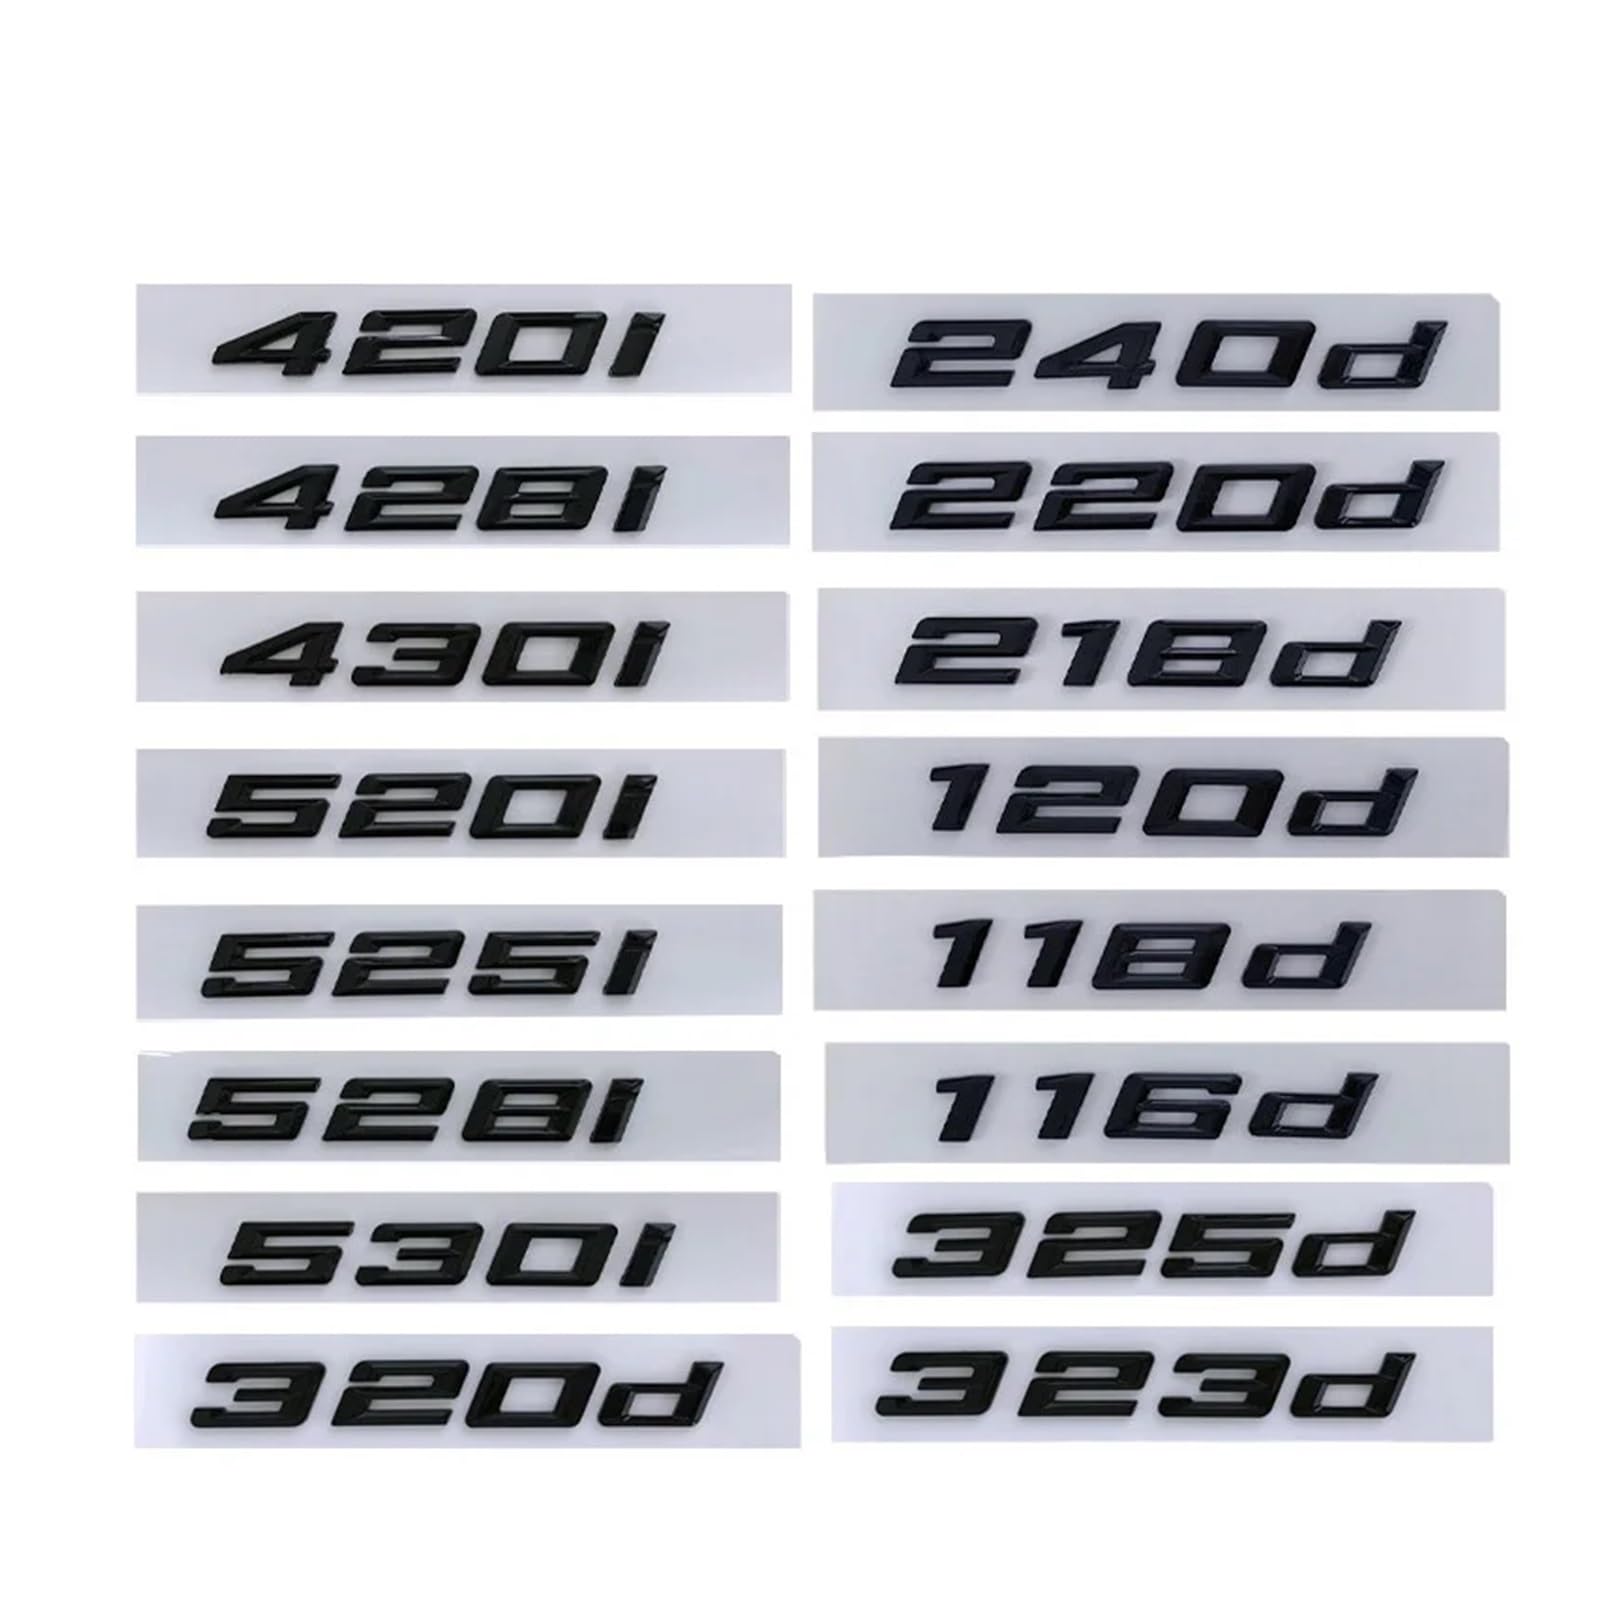 YSRWTBBA 3D ABS Logo 118d 120d 220d 316d 318d 320d 330d 340d 420d 530d 535d Buchstaben Auto Kofferraum Aufkleber for E90 E92 E46 F30 G20 Zubehör, einfach abziehen und abzi(Glos von YSRWTBBA